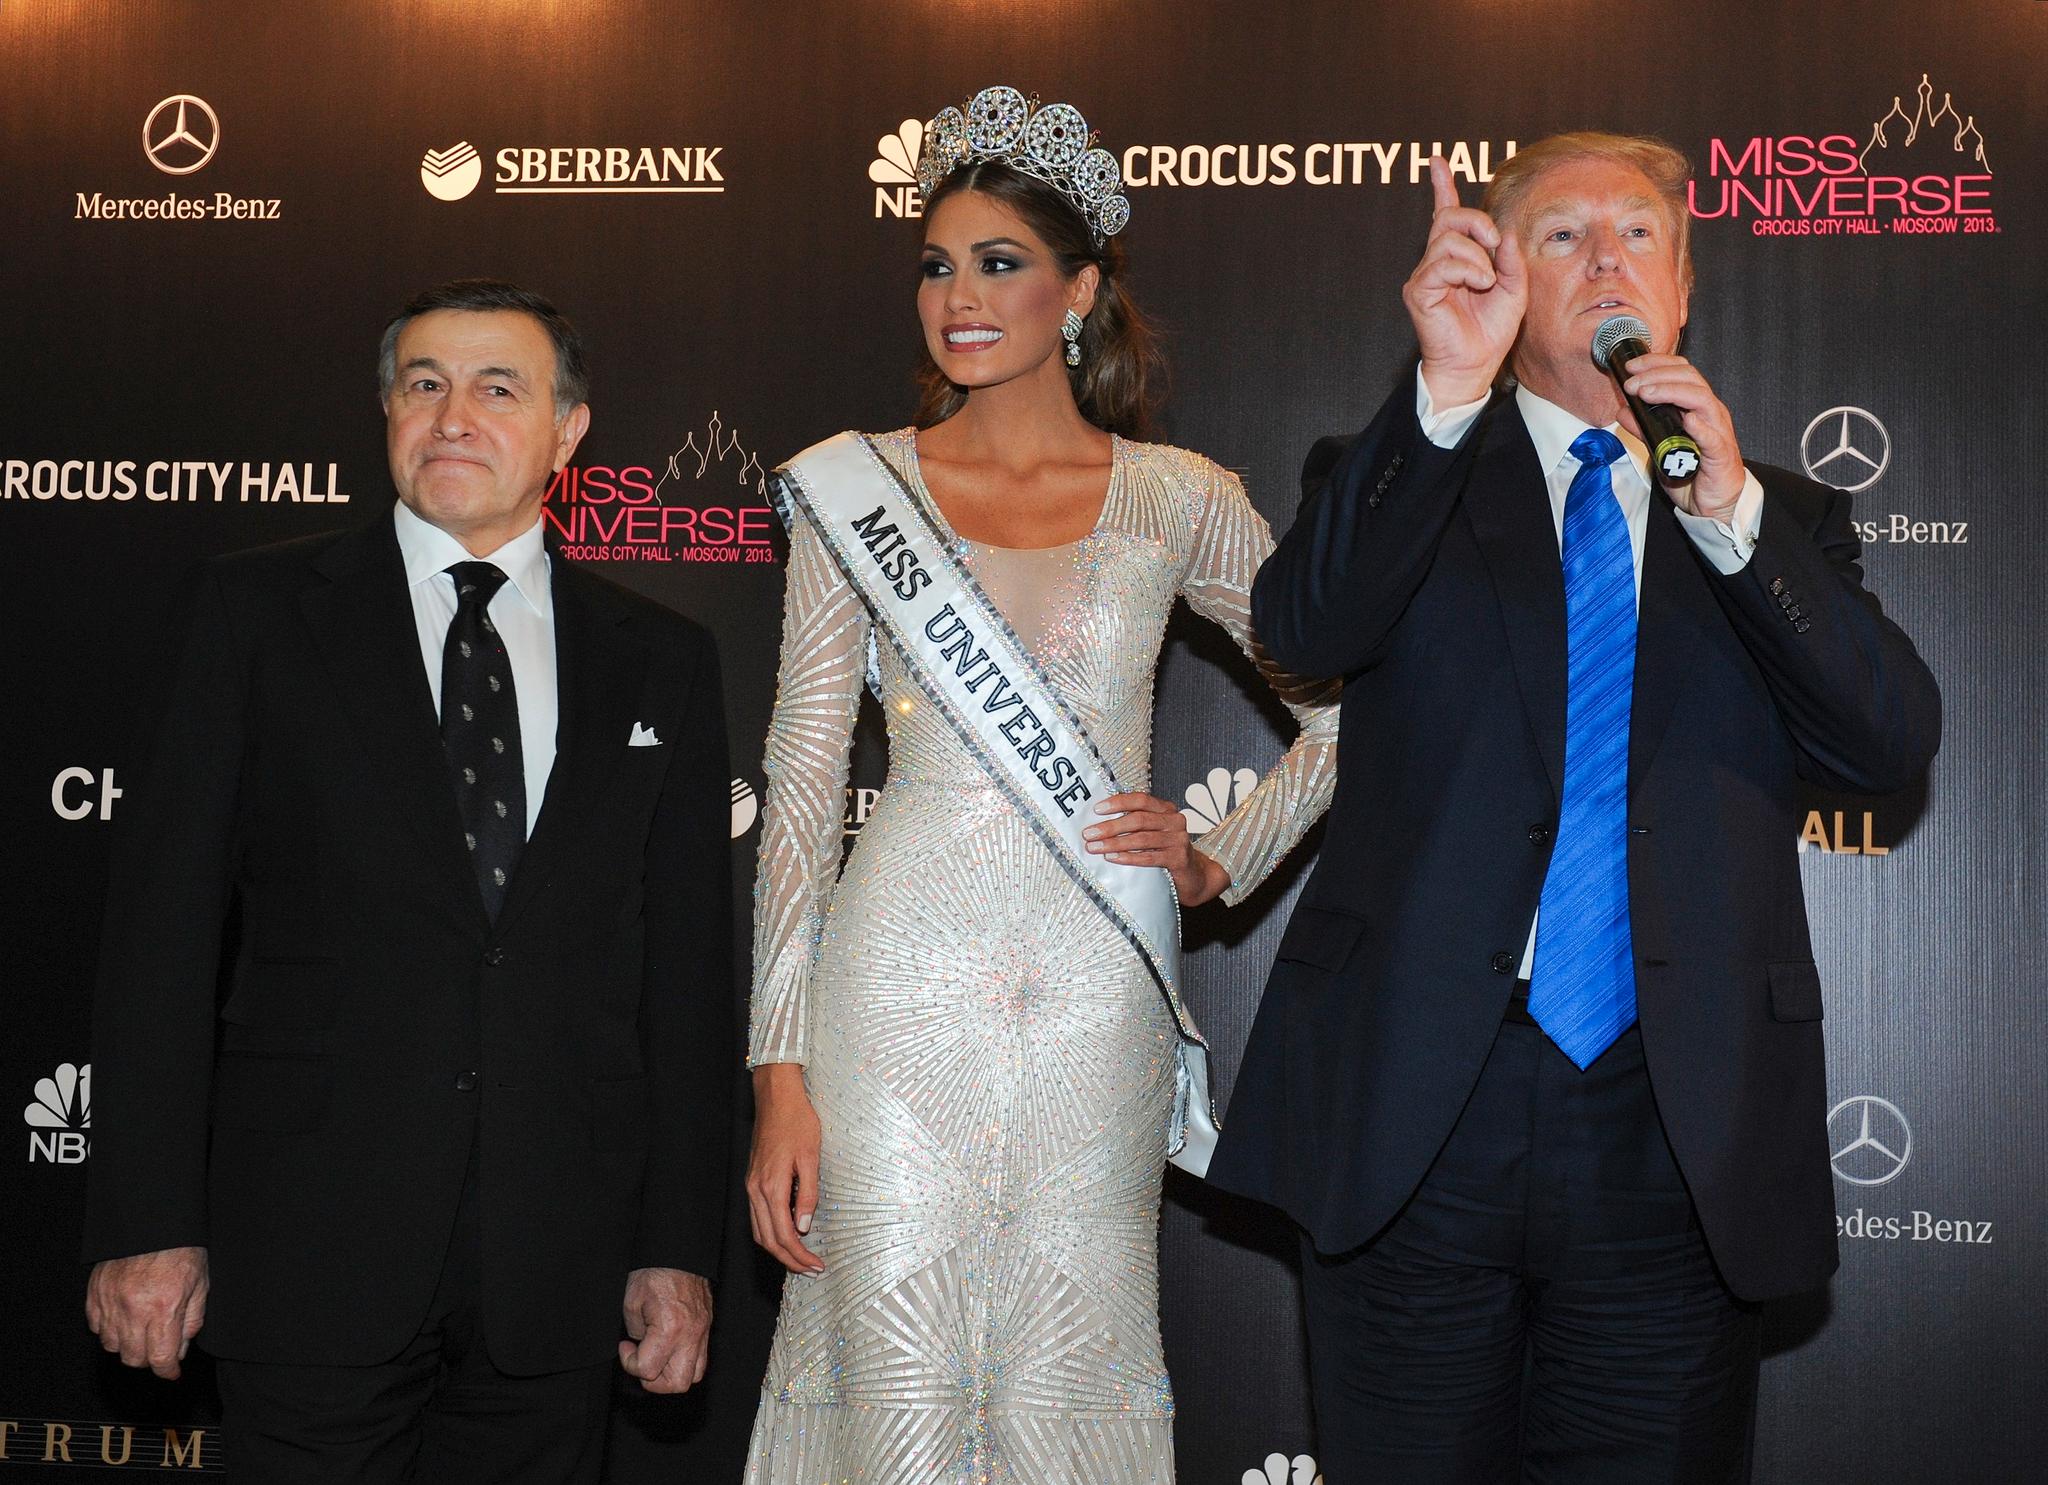 Donald Trump sørget for at Miss Universe-konkurransen ble holdt i Moskva i 2013. Her deler han scenen med den styrtrike forretningsmannen Aras Agalarov, som er et sentralt navn i etterforskningen av Trumps forbindelser til Russland, og Gabriela Isler, som vant konkurransen.